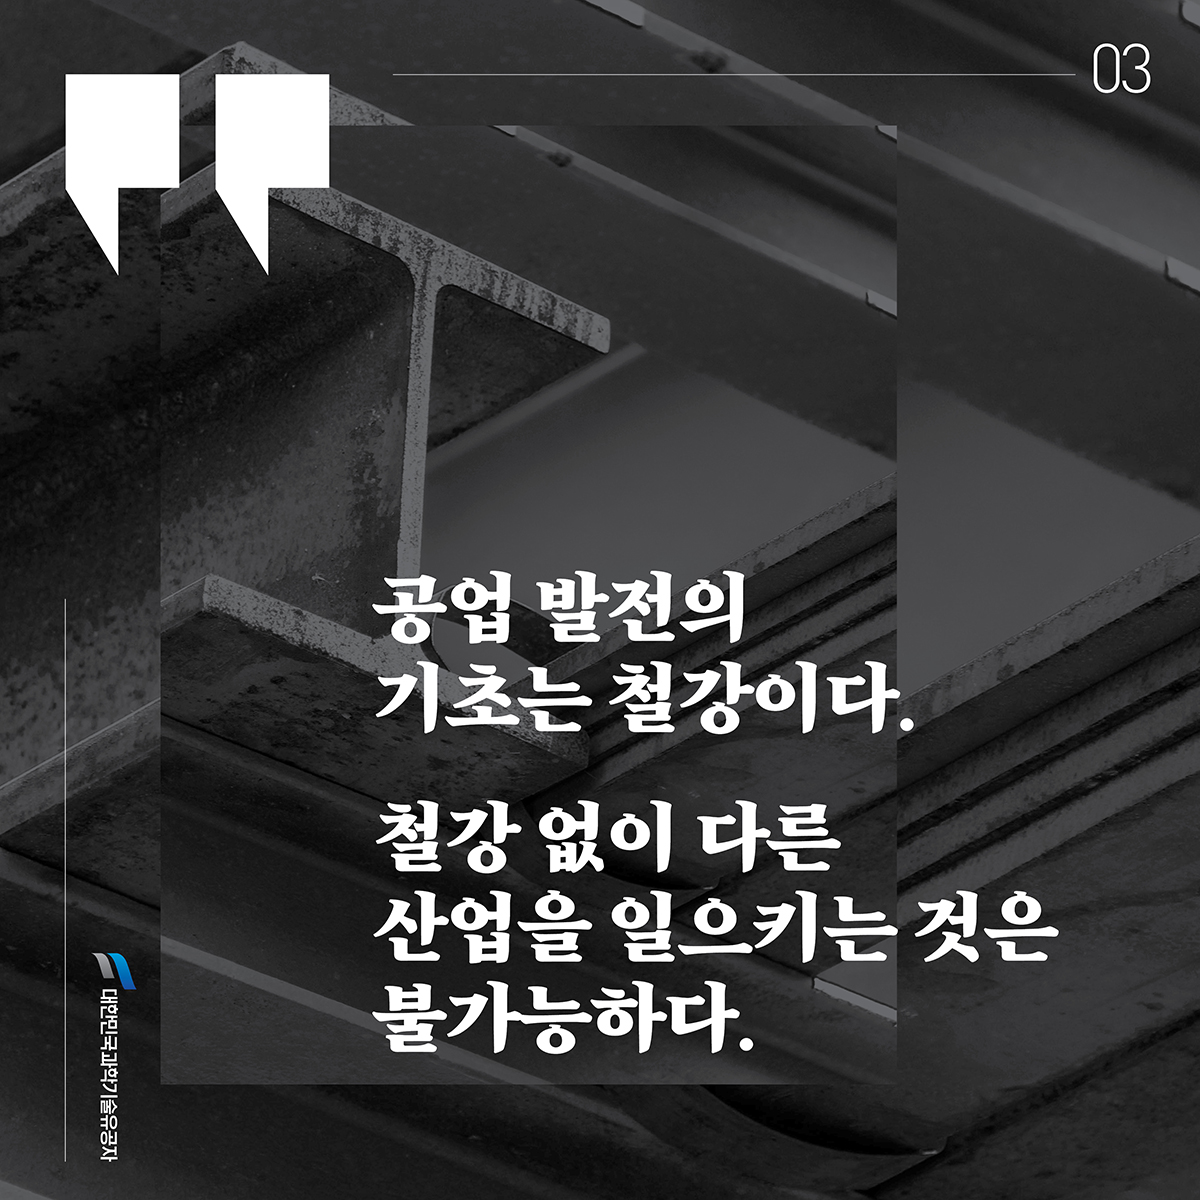 김재관_카드뉴스3.jpg 이미지입니다.